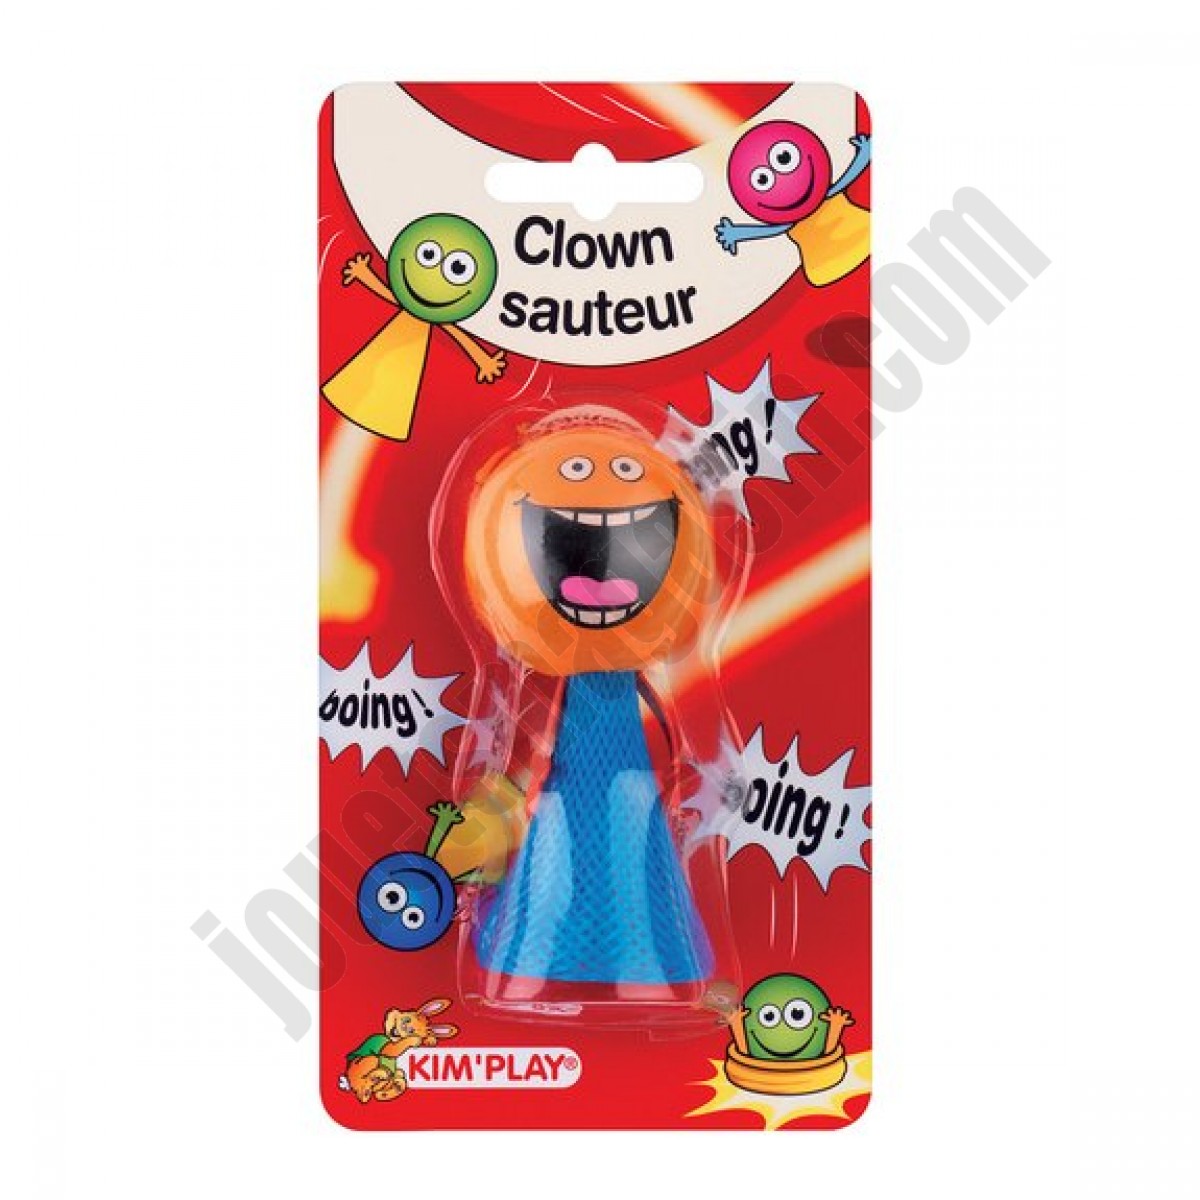 Clown Sauteur ◆◆◆ Nouveau - Clown Sauteur ◆◆◆ Nouveau